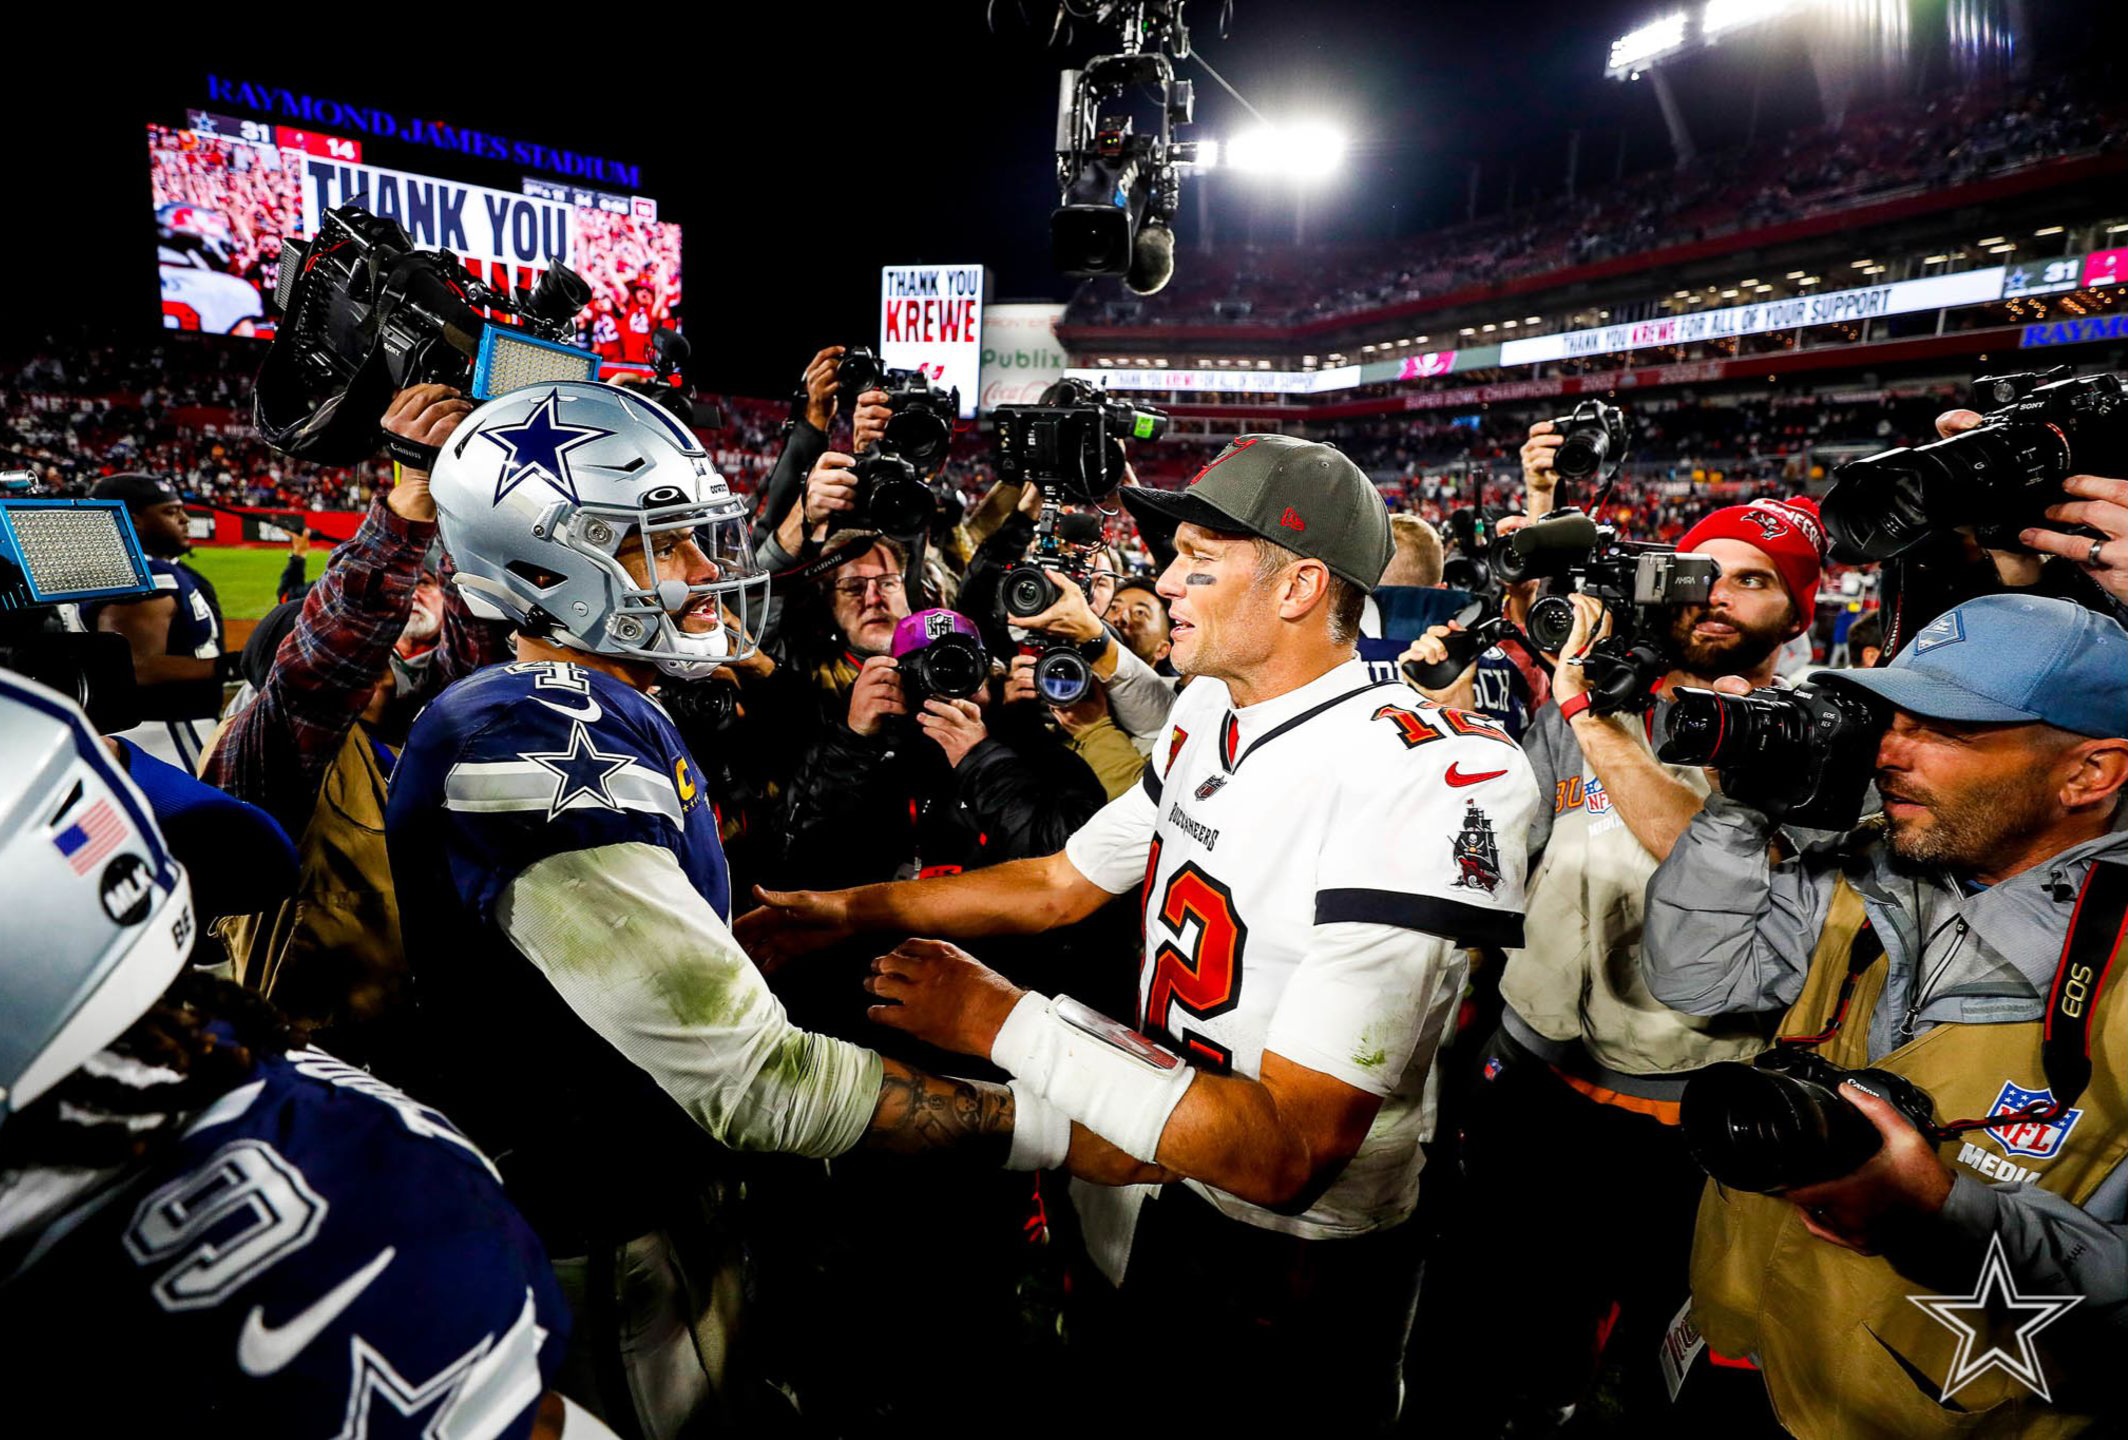 Buccaneers' quarterback Tom Brady / via Associated Press